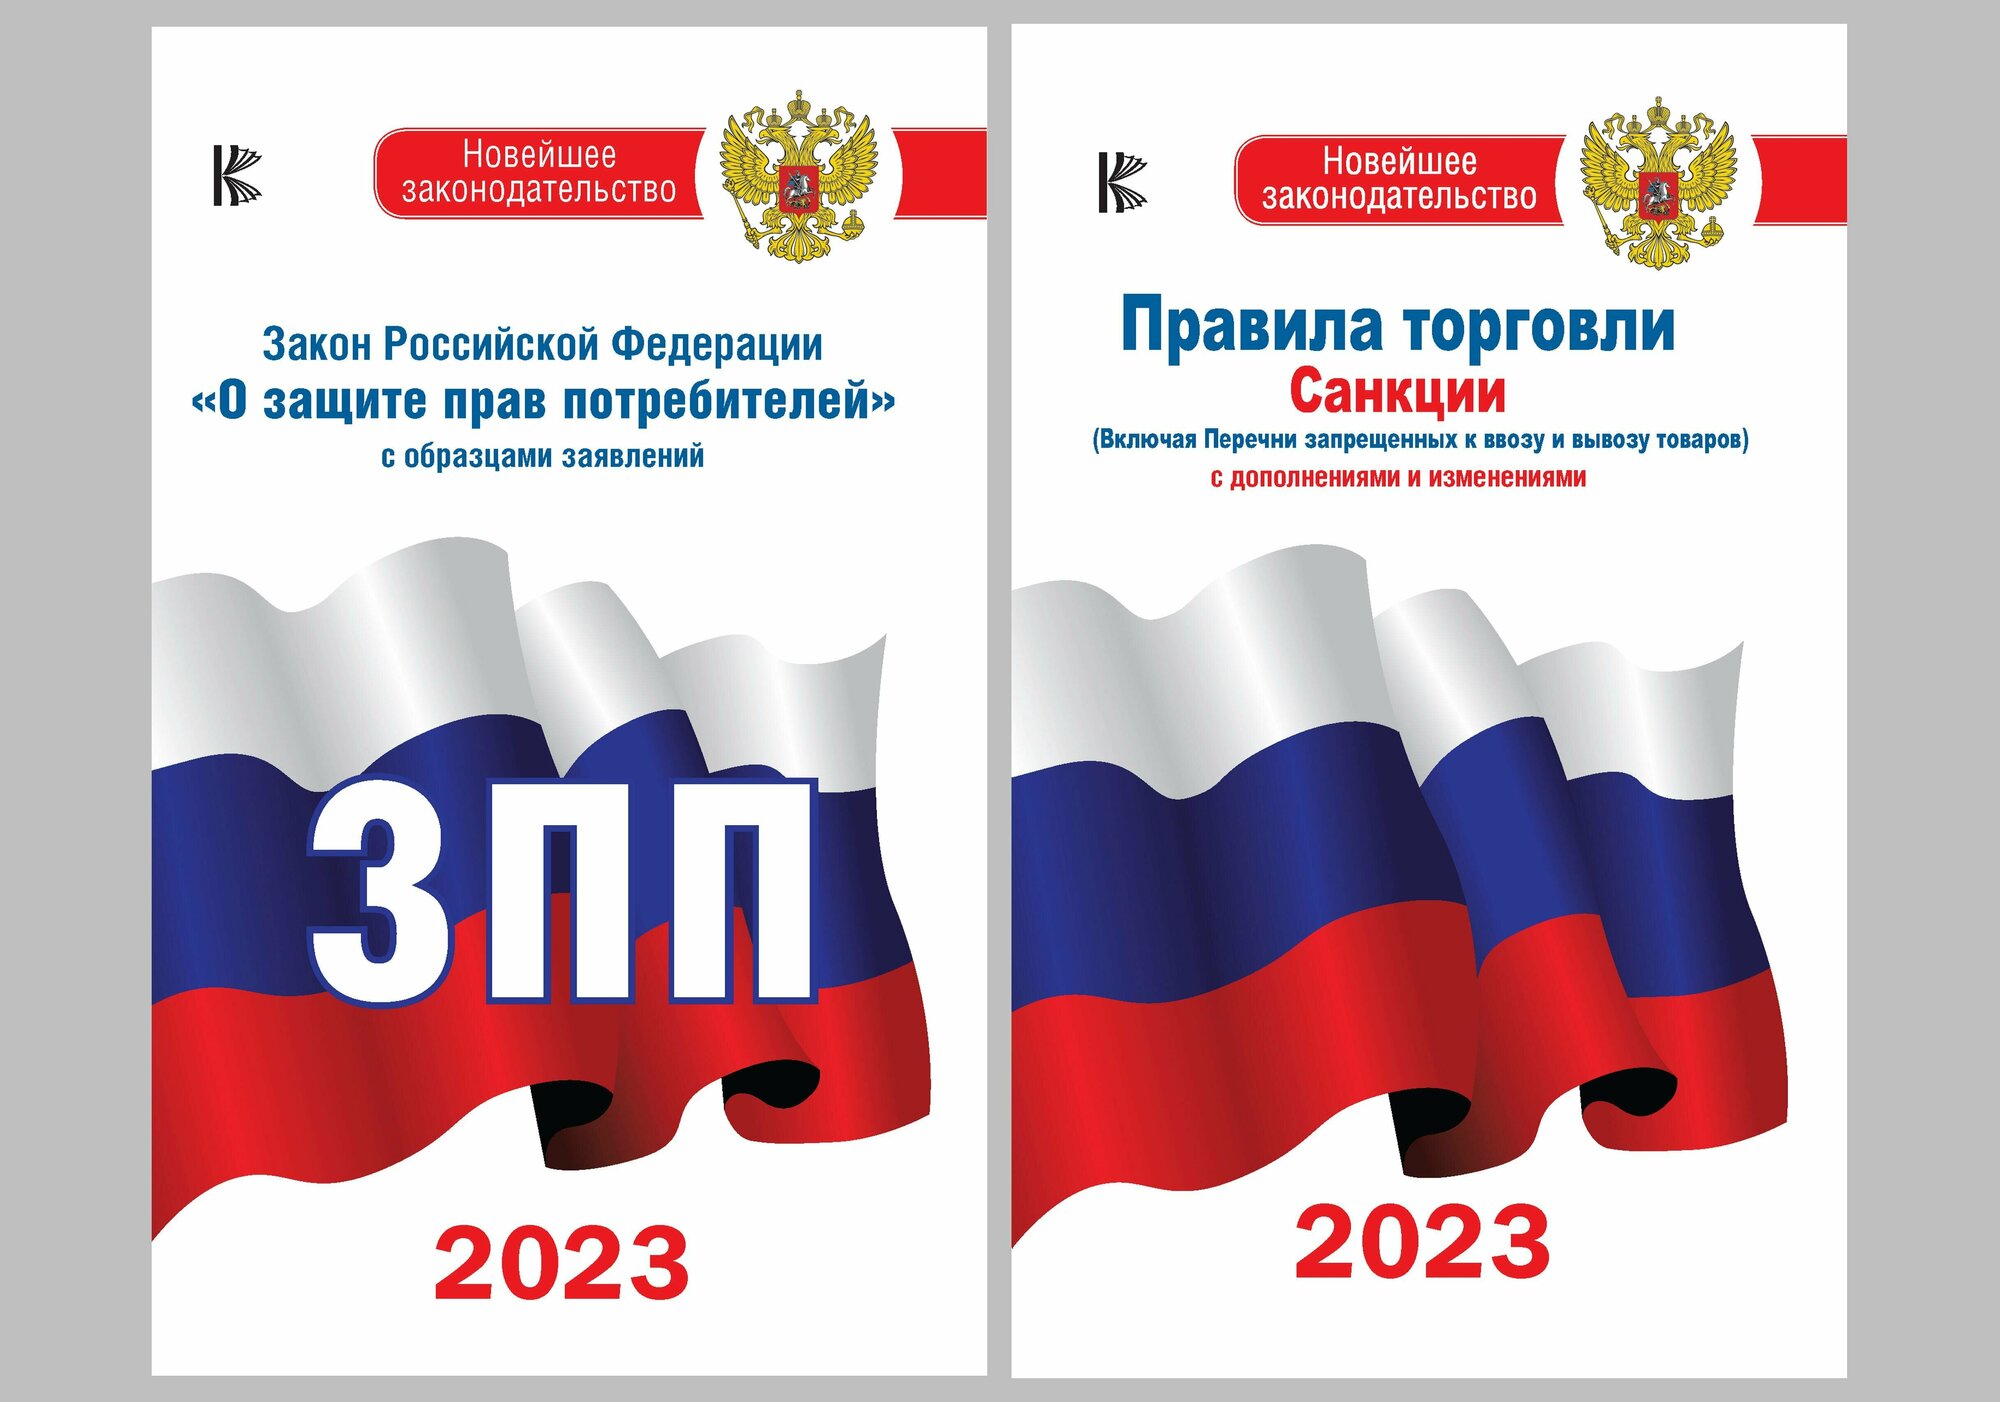 Комплект из 2-х книг: Закон РФ " О защите прав потребителей" на 2023 год Правила торговли с изменениями и дополнениями на 2023 год .